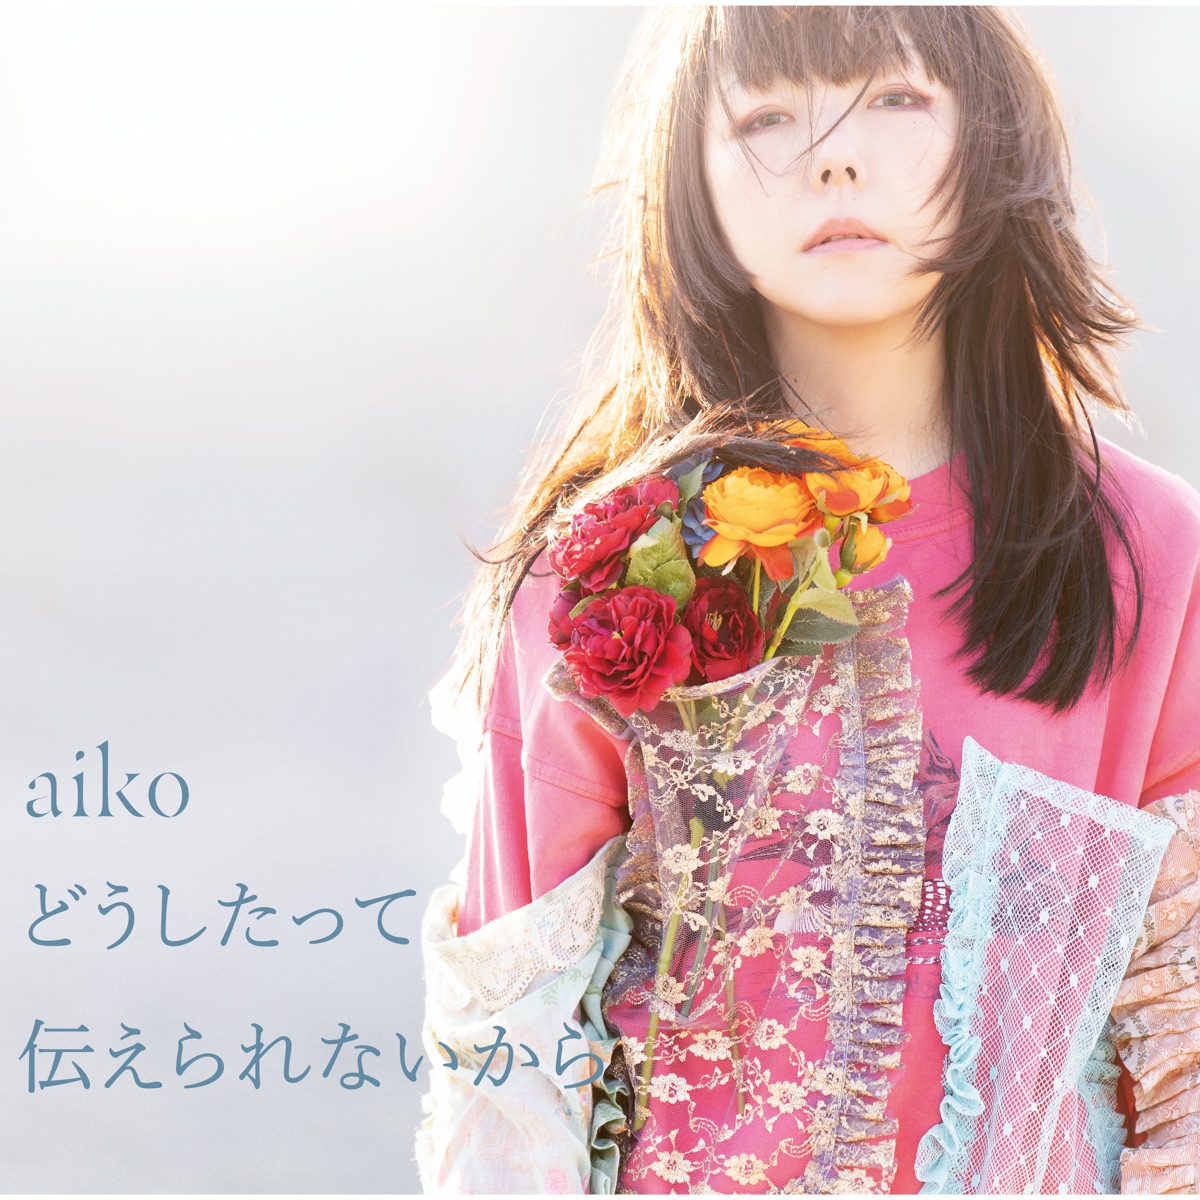 『aiko - 愛で僕は』収録の『どうしたって伝えられないから』ジャケット